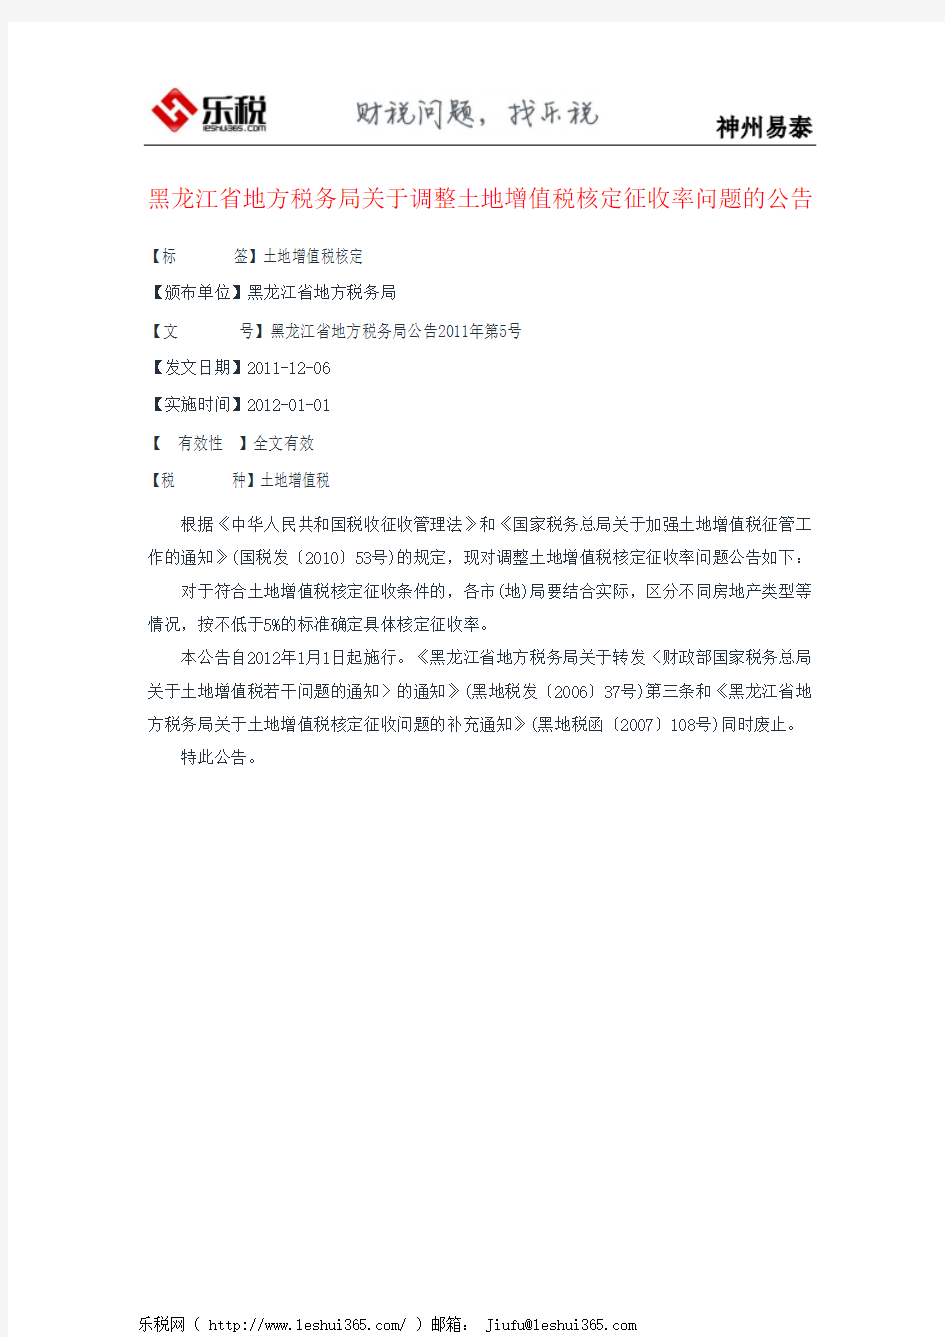 黑龙江省地方税务局关于调整土地增值税核定征收率问题的公告